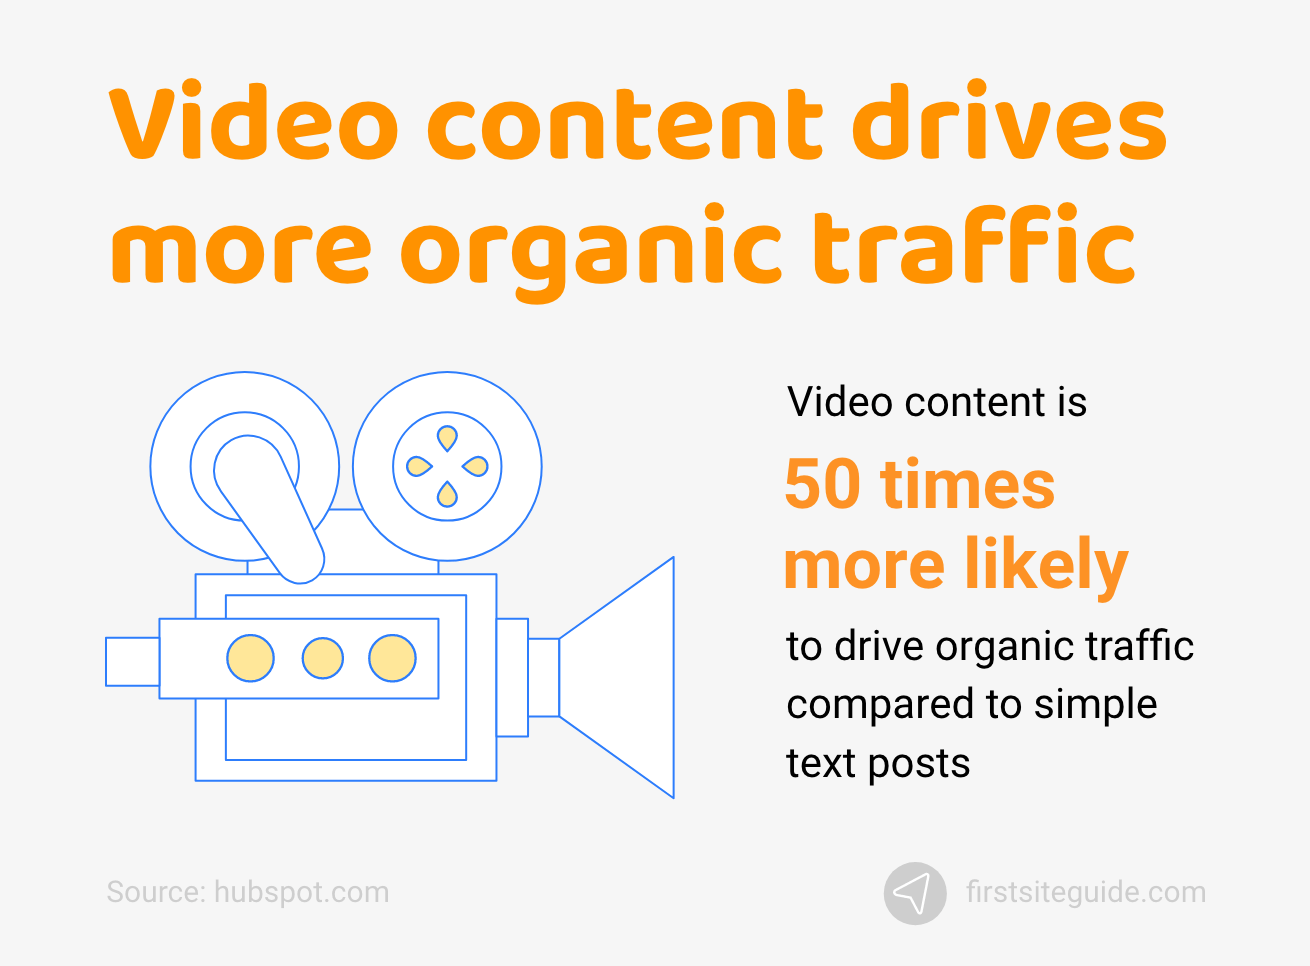 Konten video mendorong lebih banyak lalu lintas organik